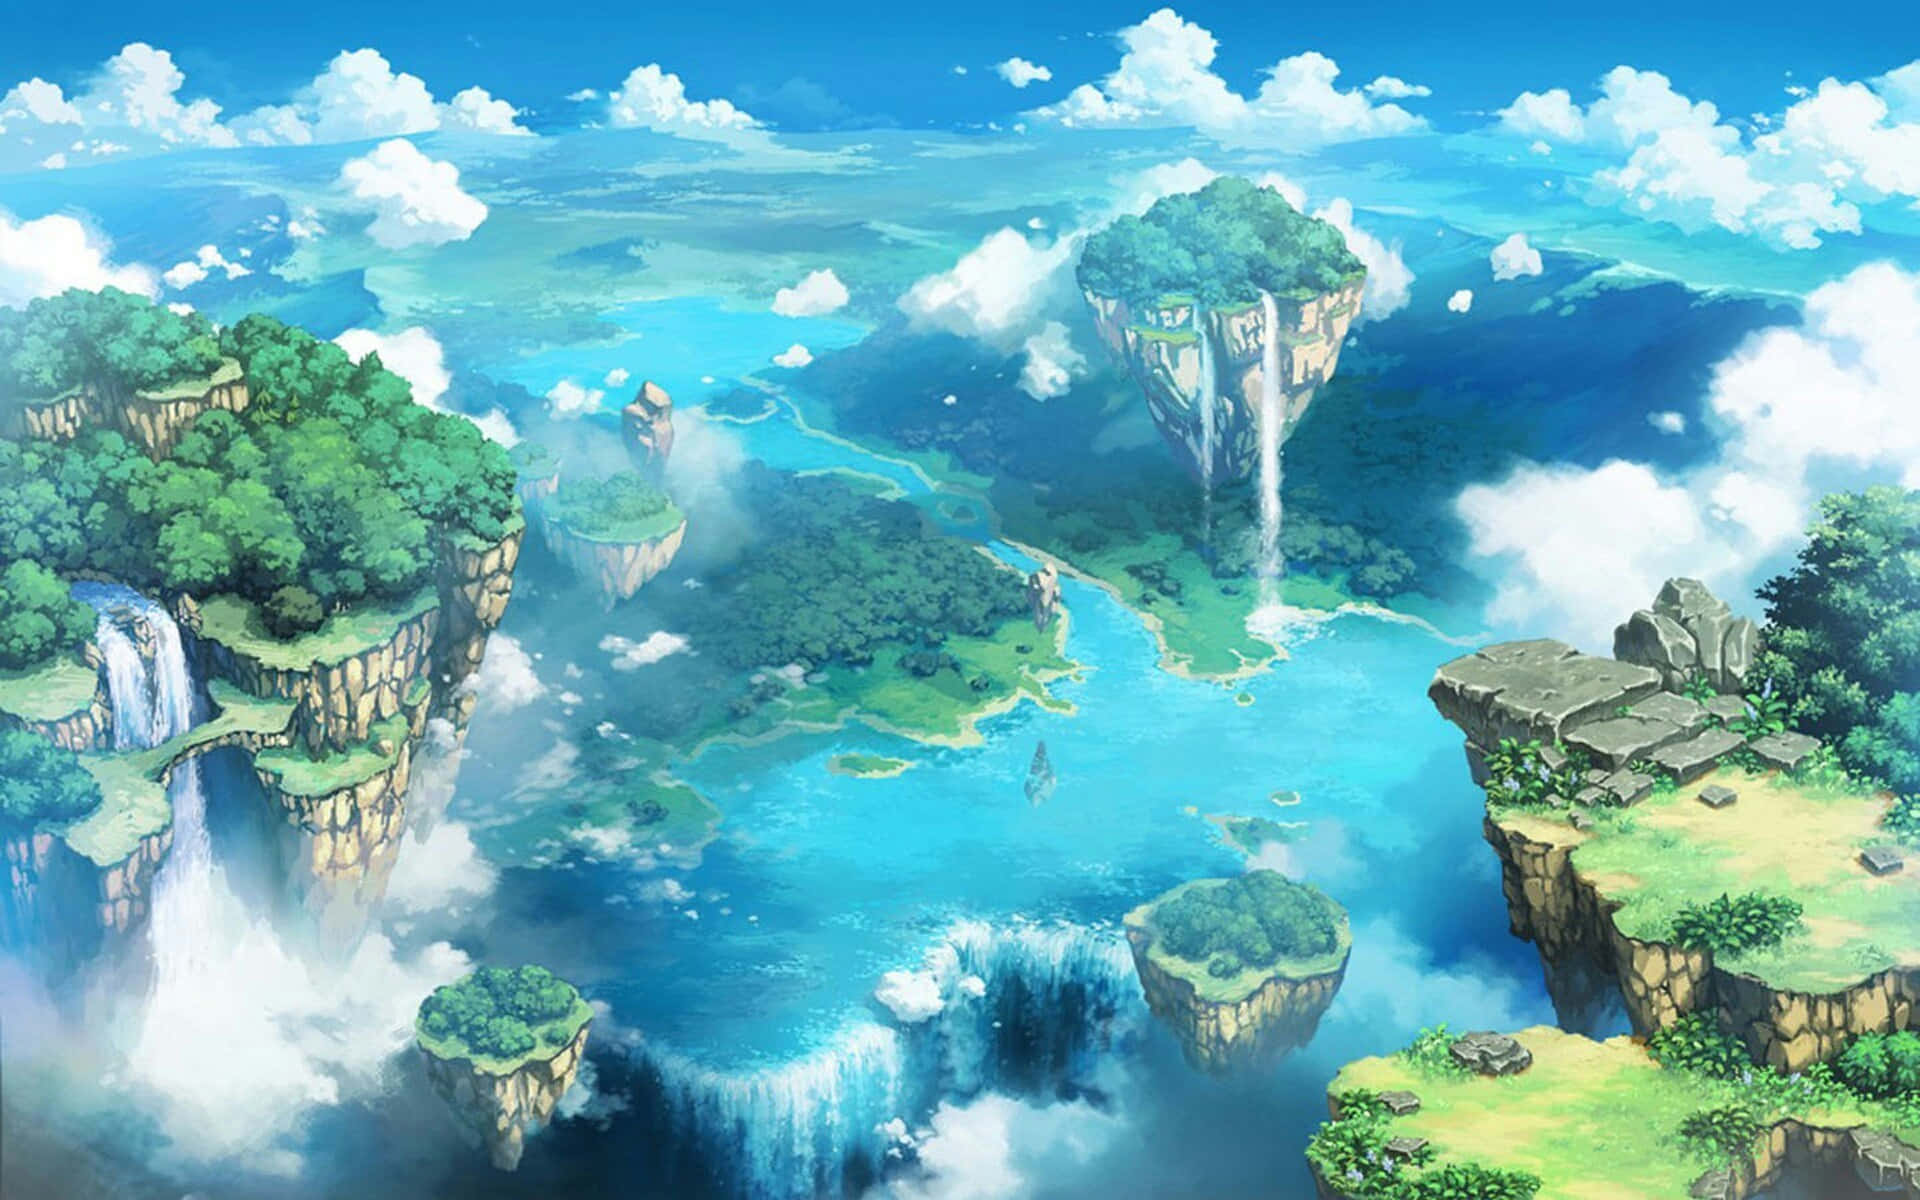 ArtStation - Fantasy Anime Environment Design